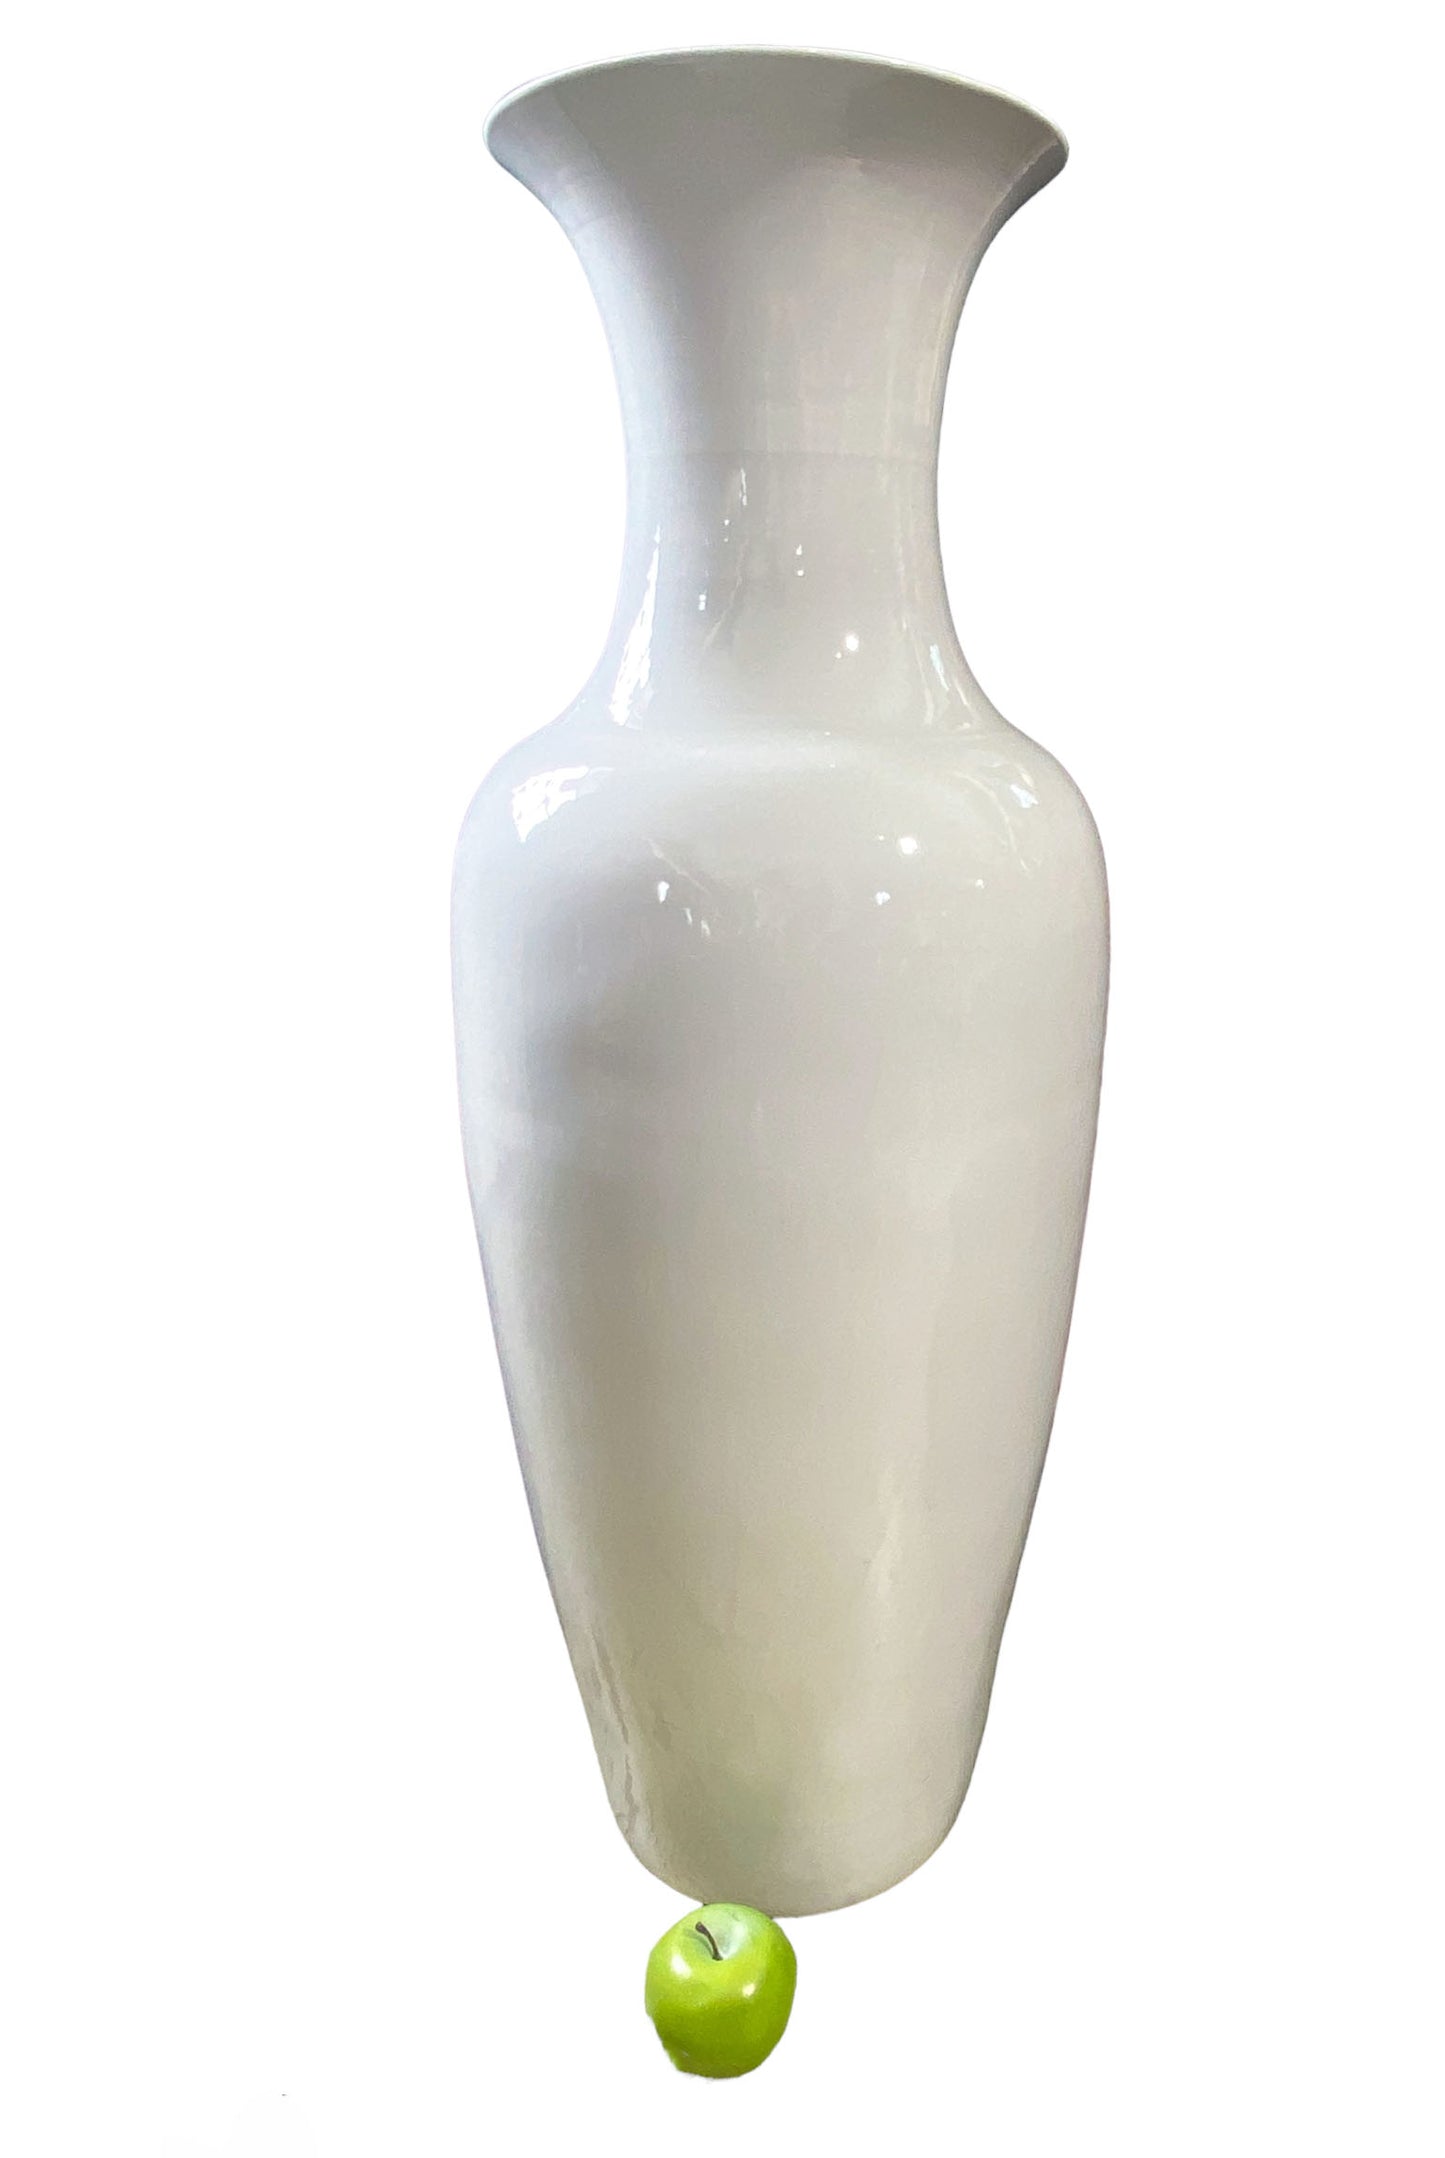 # 841 Large Chinoiserie  Blanc De Chine  Porcelain Vase 36.5"H